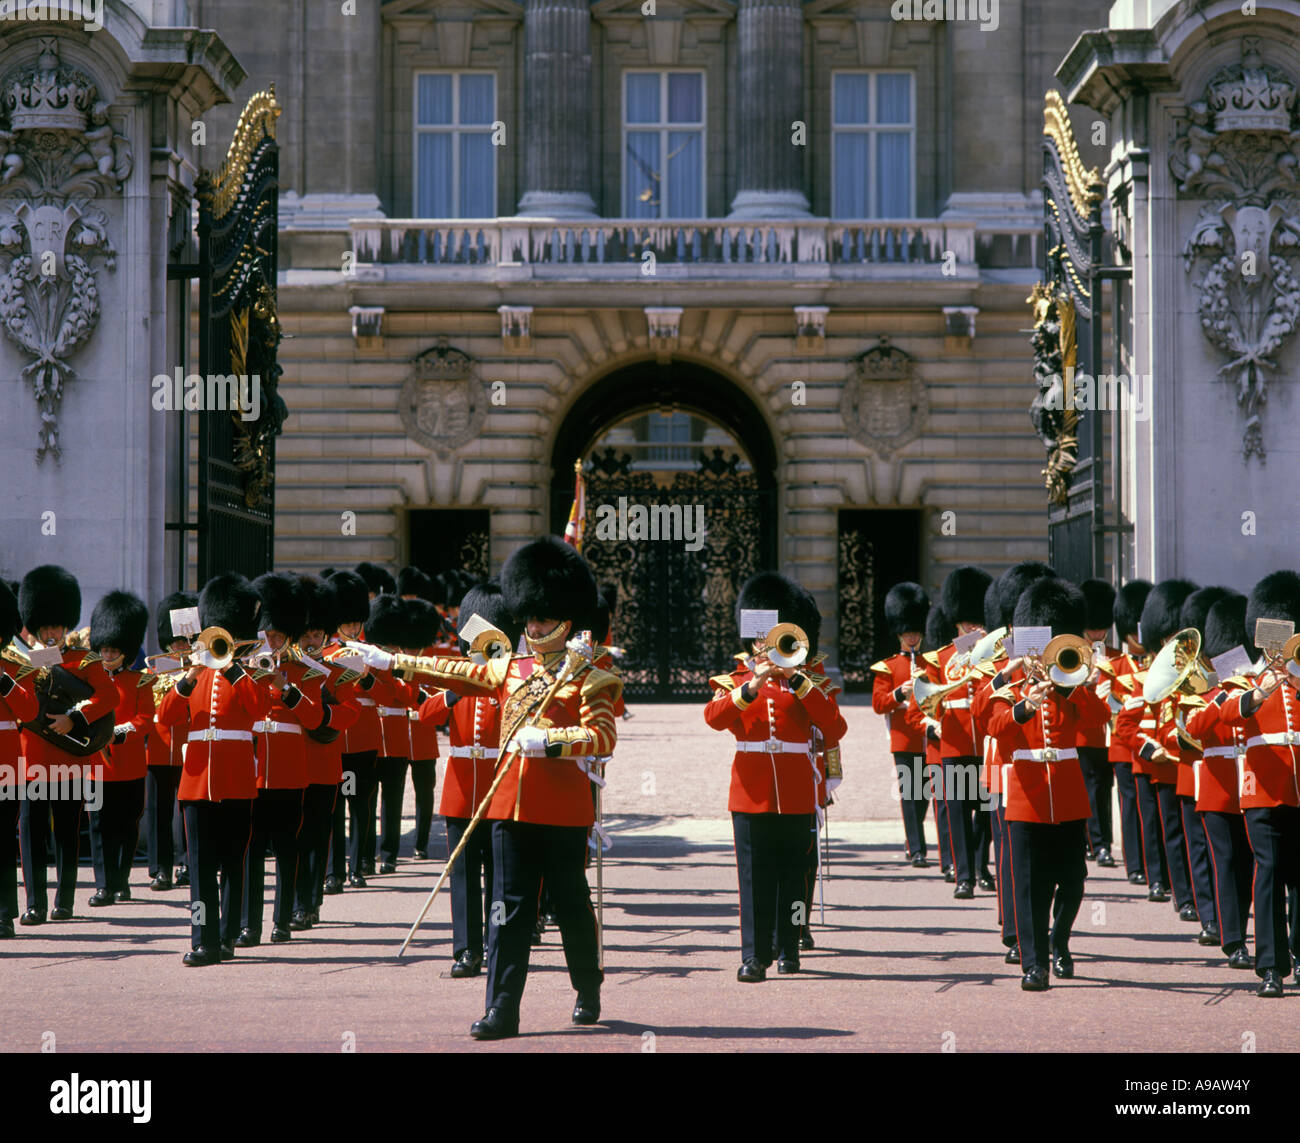 Fanfare militaire PARADE relève de la garde de Buckingham Palace LONDON ENGLAND UK Banque D'Images